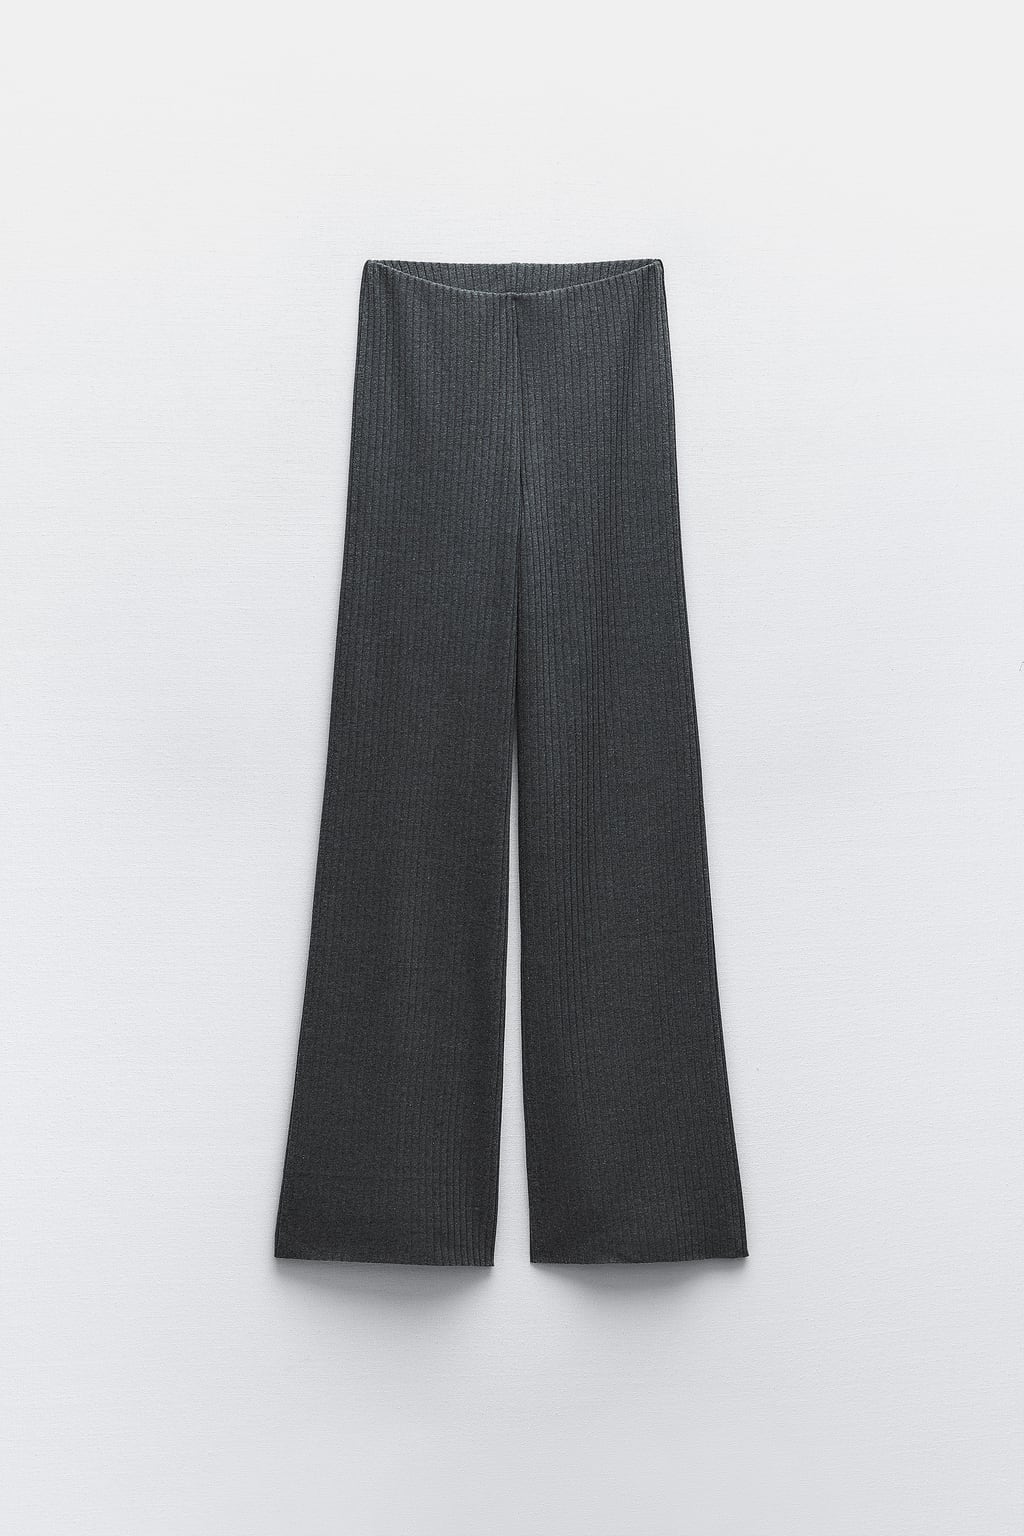 Широкие брюки в рубчик ZARA, серый мергель брюки женские хлопково льняные с широкими штанинами винтажные свободные шаровары для йоги модные длинные штаны с эластичным поясом больш